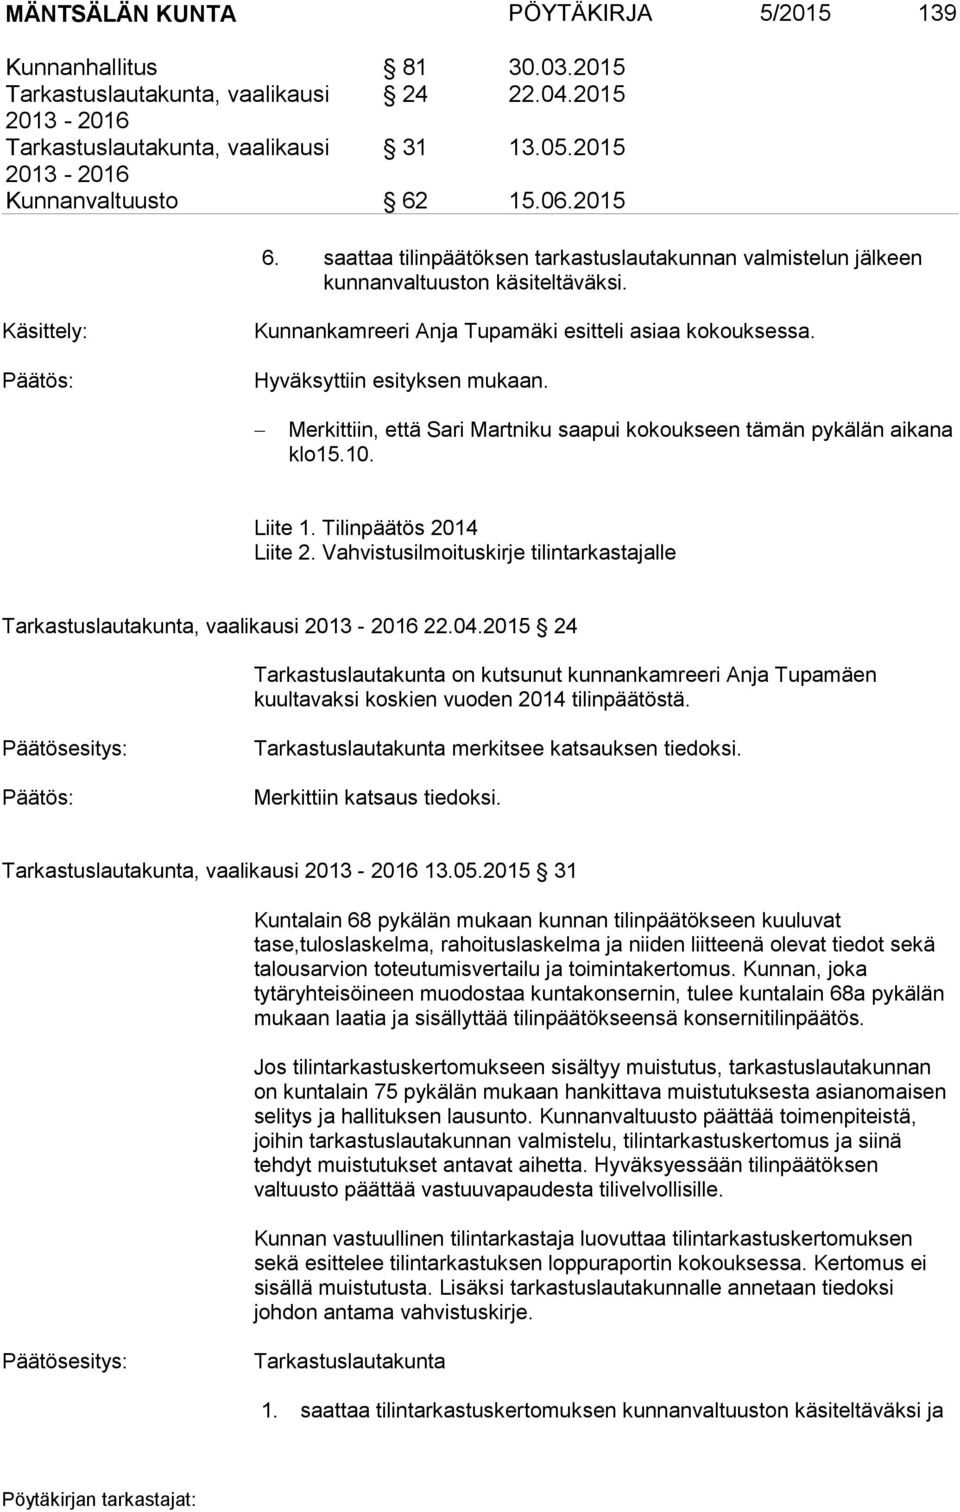 Käsittely: Kunnankamreeri Anja Tupamäki esitteli asiaa kokouksessa. Merkittiin, että Sari Martniku saapui kokoukseen tämän pykälän aikana klo15.10. Liite 1. Tilinpäätös 2014 Liite 2.